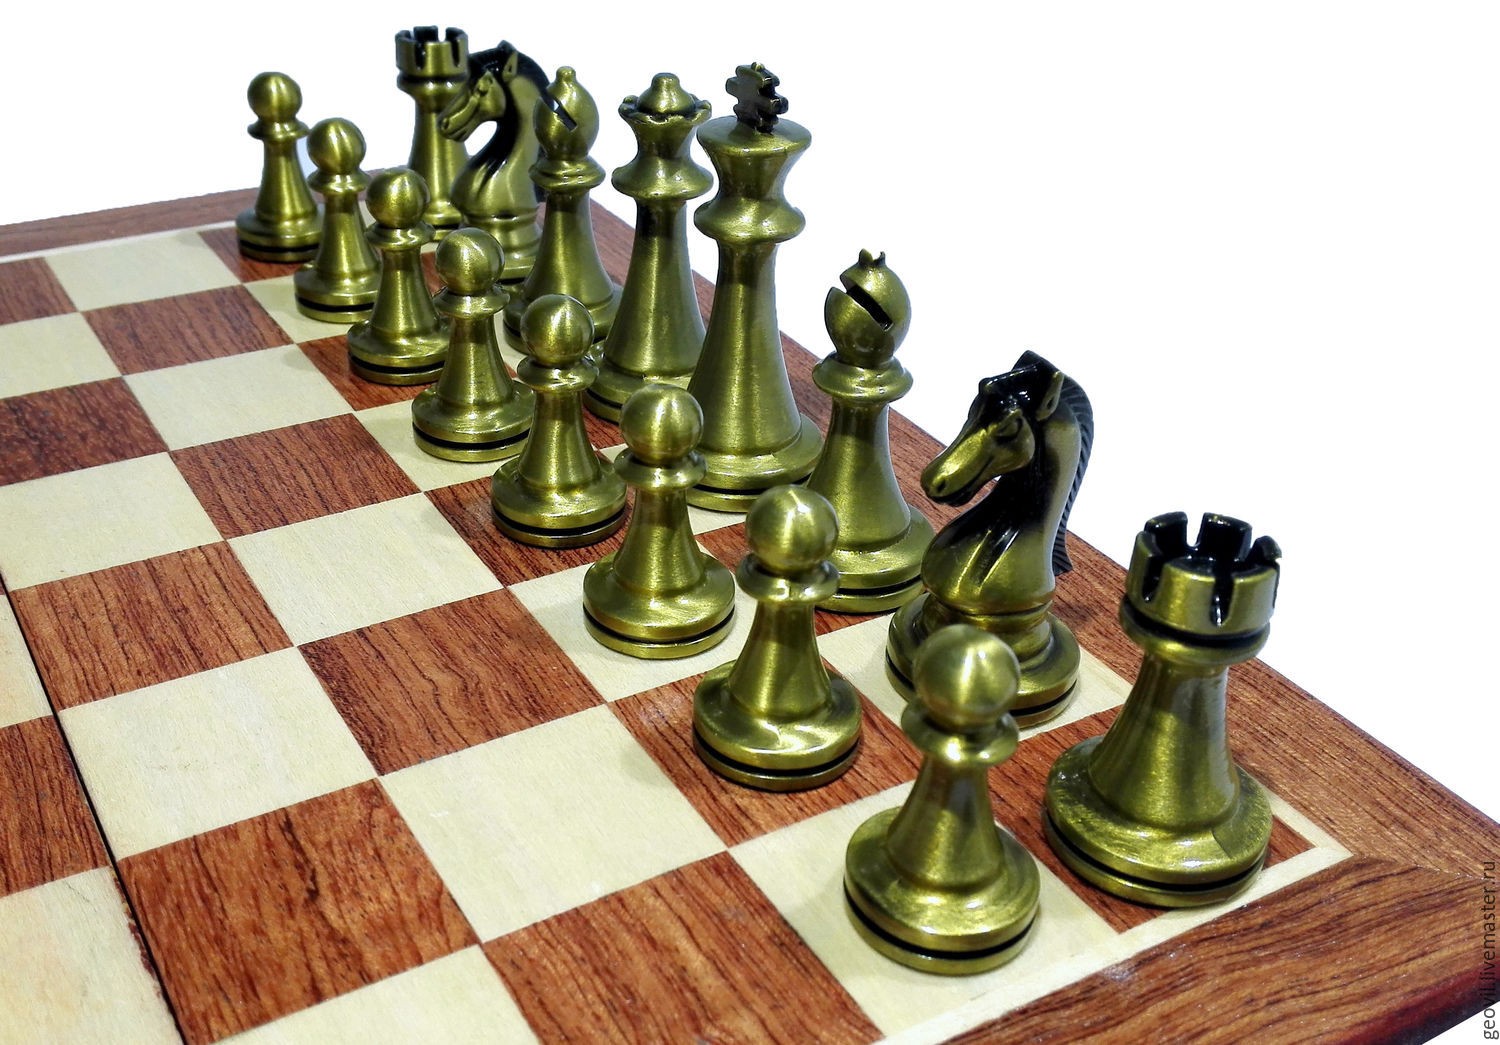 Phát huy sự khéo léo của mình bằng cách tạo nên những tác phẩm chess papercraft đẹp mắt và đầy sáng tạo. Với một ít kiên nhẫn và tài năng, bạn sẽ tự mình thiết kế và tạo ra những chiếc bàn cờ độc đáo.